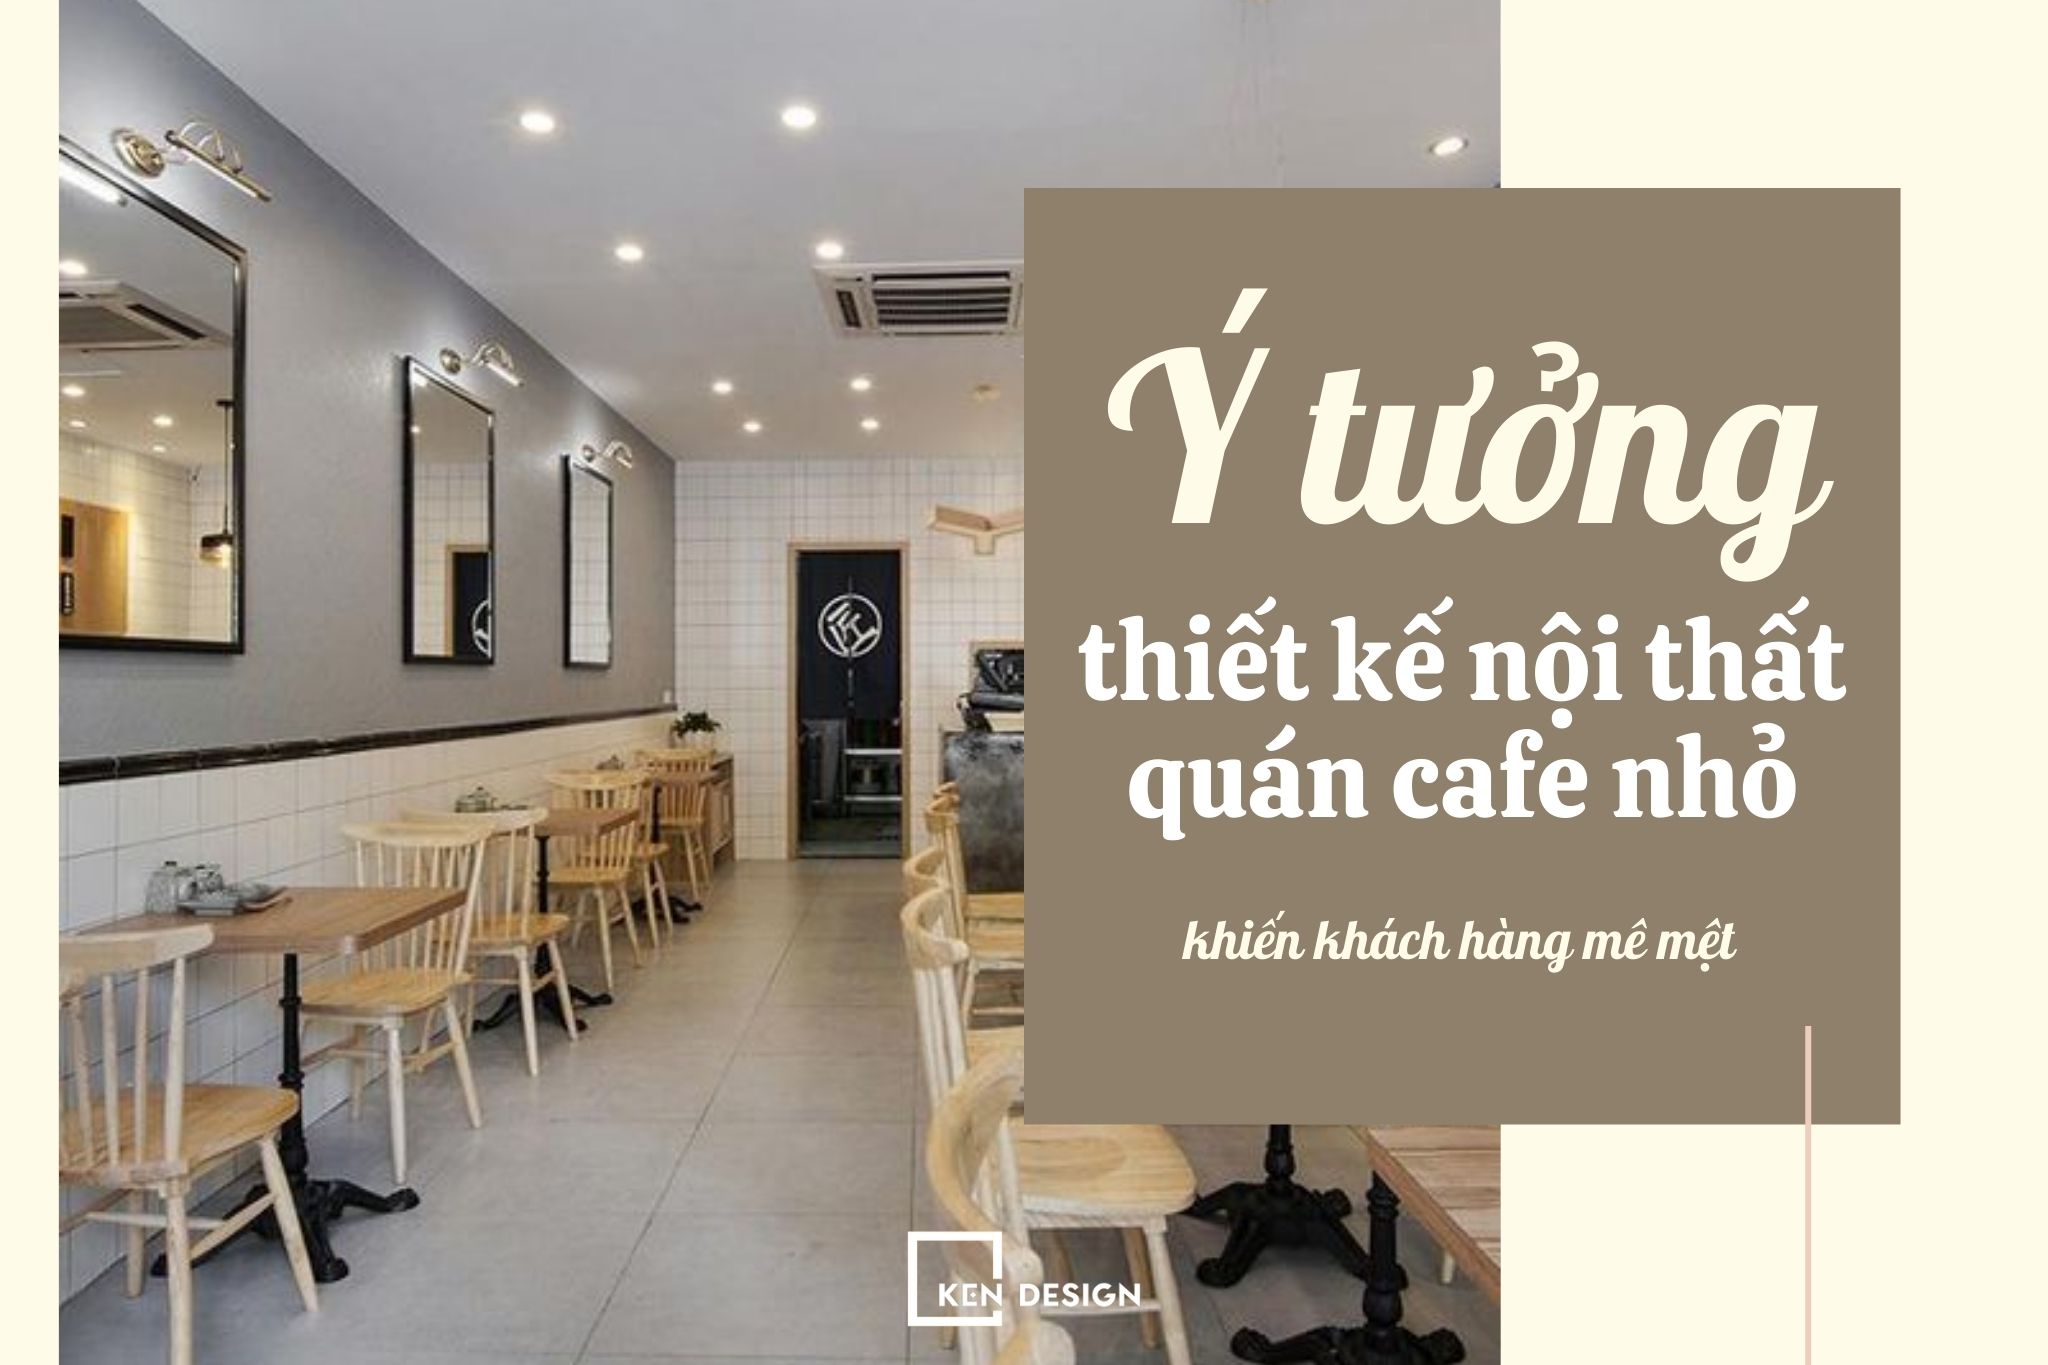 Ý tưởng thiết kế nội thất quán cafe nhỏ khiến khách hàng mê mệt